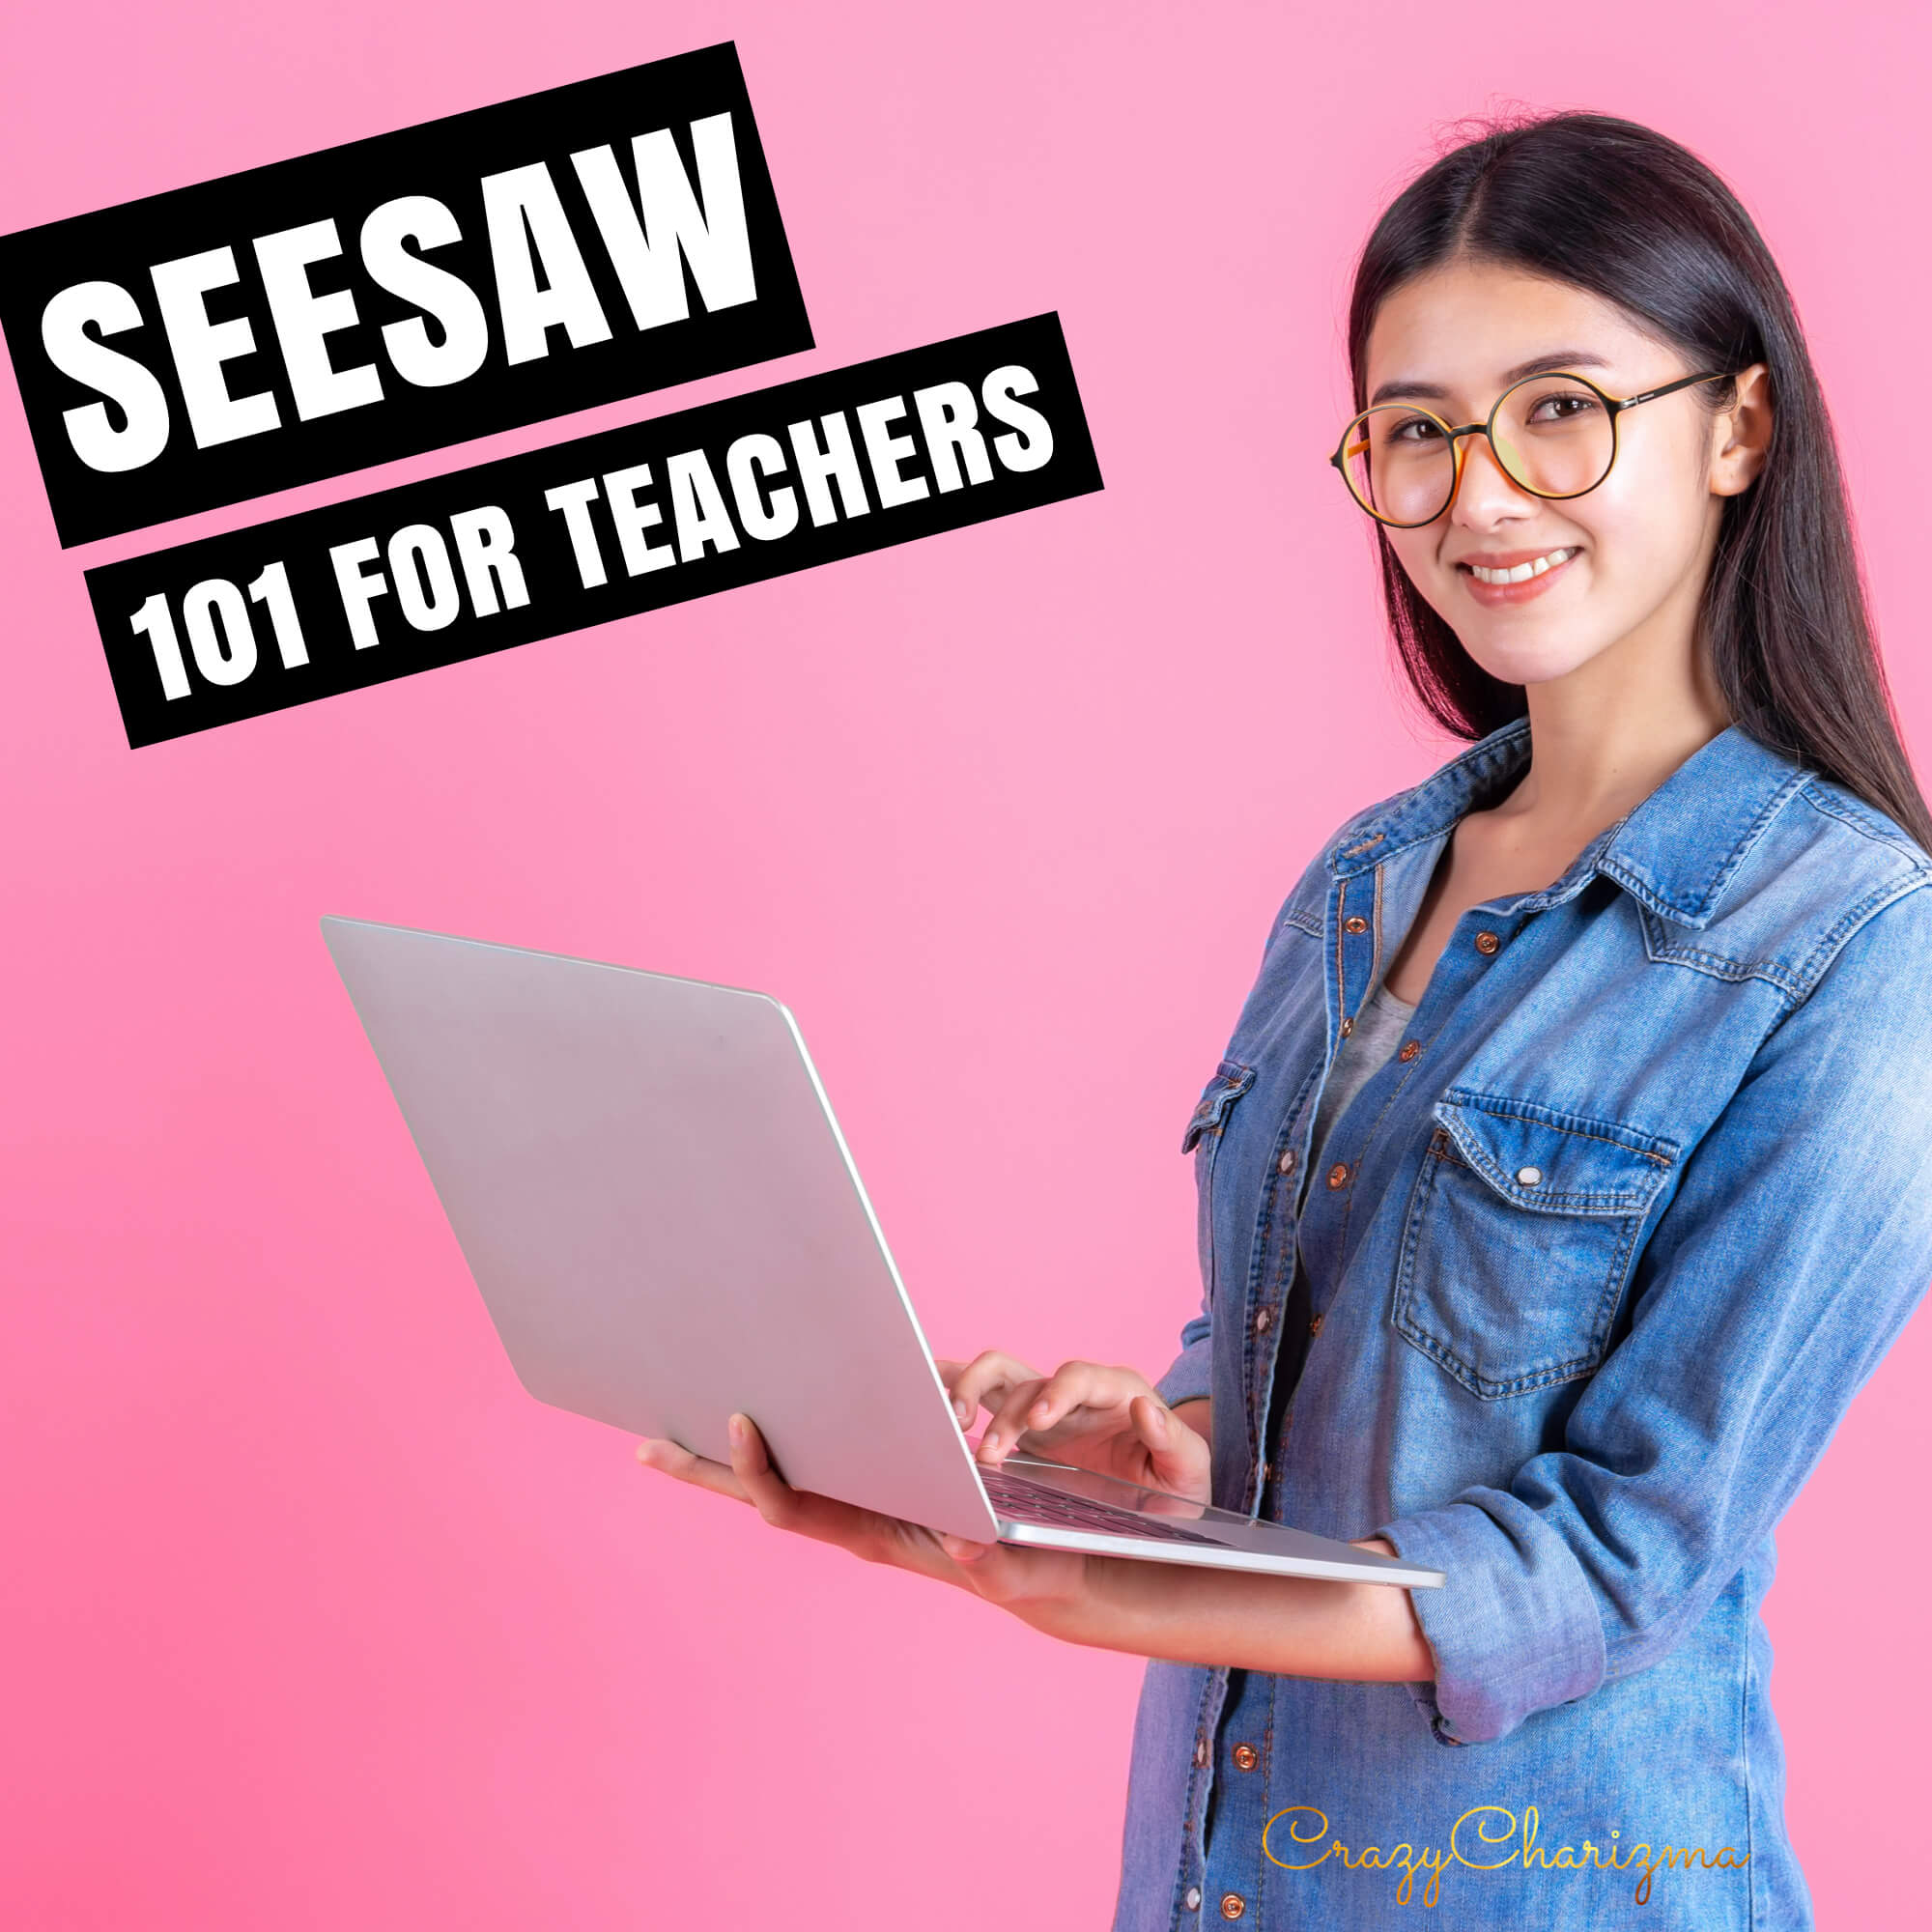 Seesaw 101 for teachers